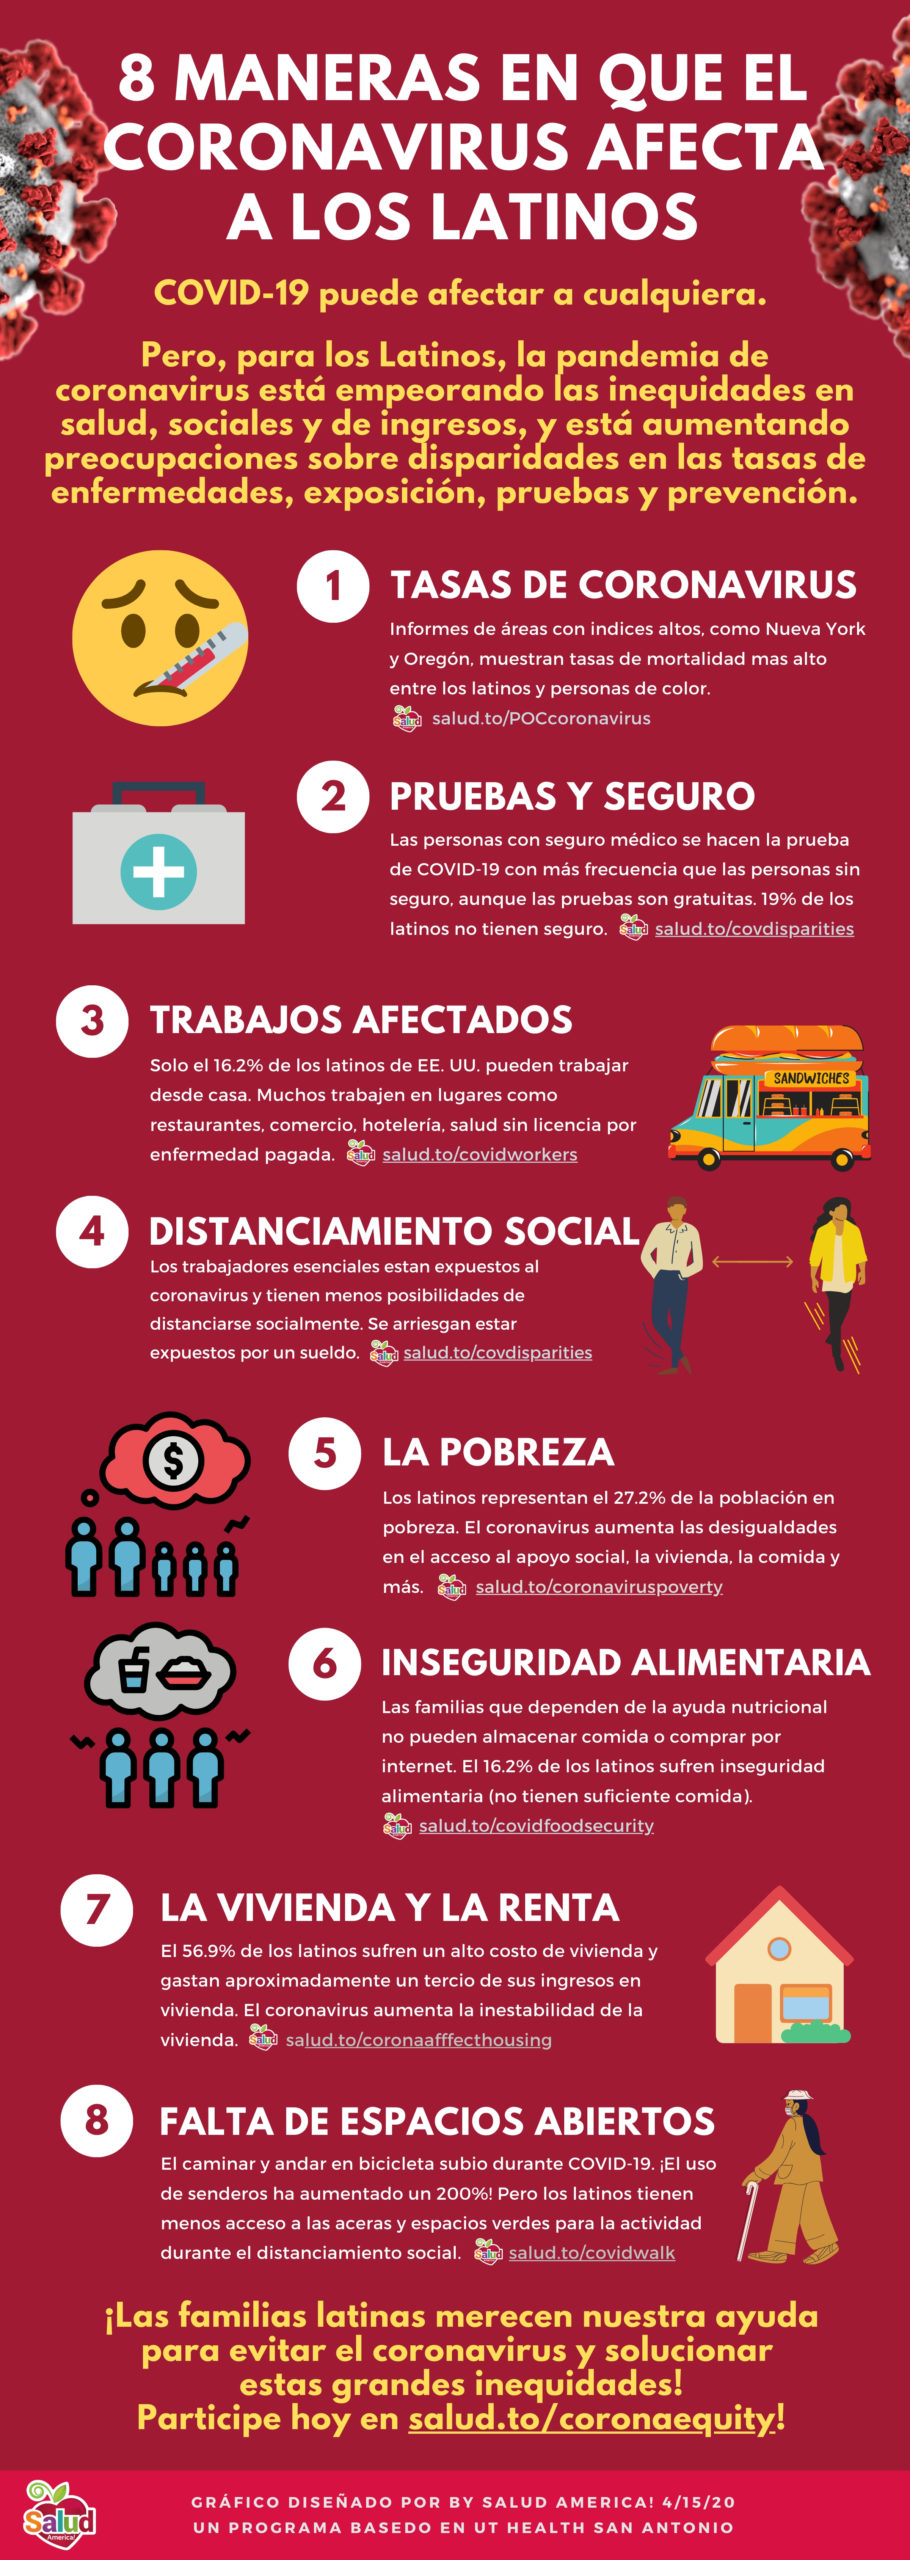 Infographic on Coronavirus and Latinos - Spanish - large